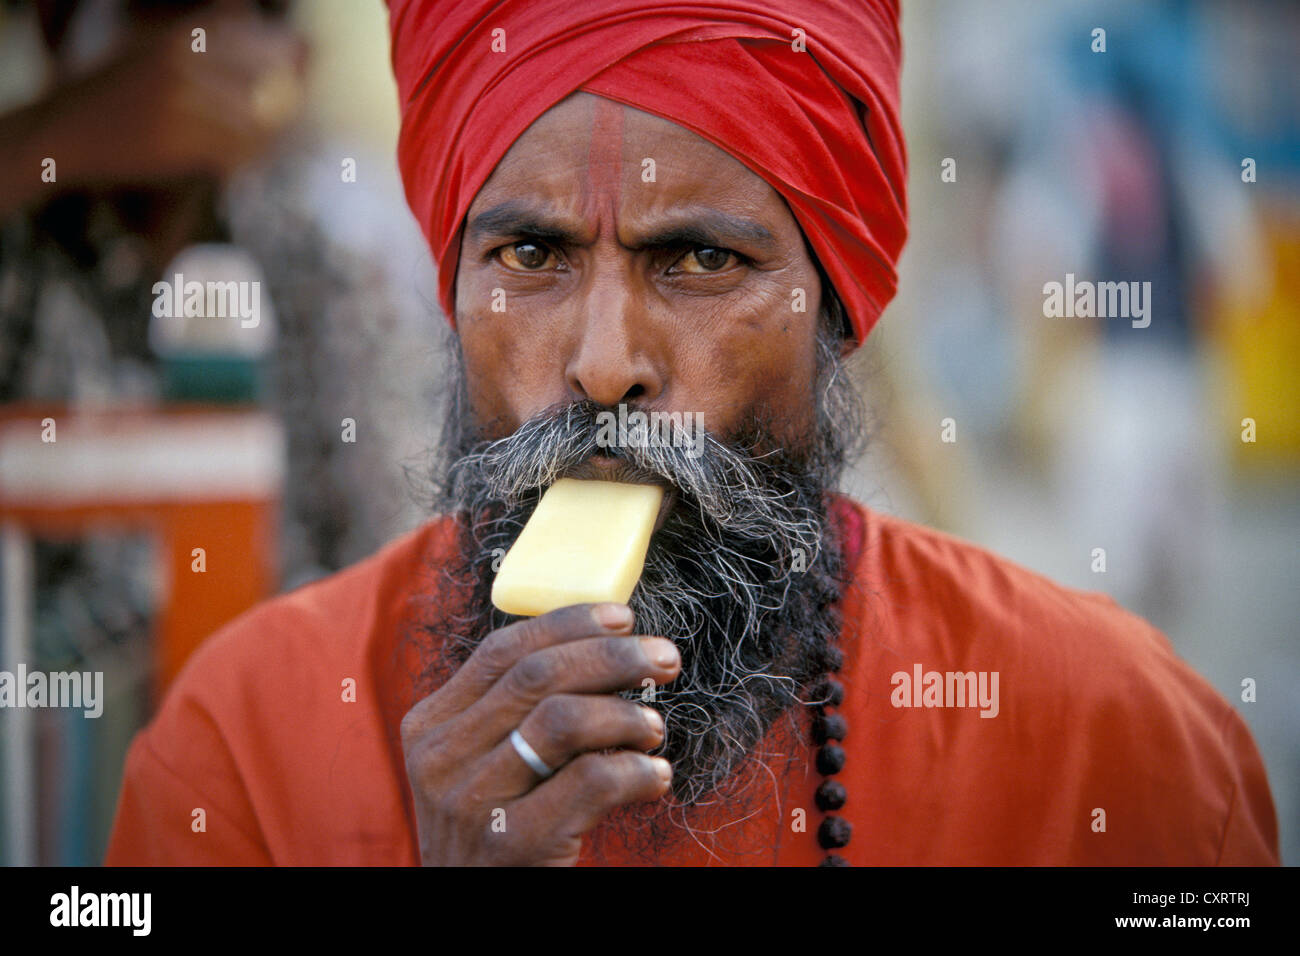 Sadhu mit einem roten Turban, ein Eis essen, Kashi, Varanasi oder Benares, Uttar Pradesh, Nordindien, Indien, Asien Stockfoto